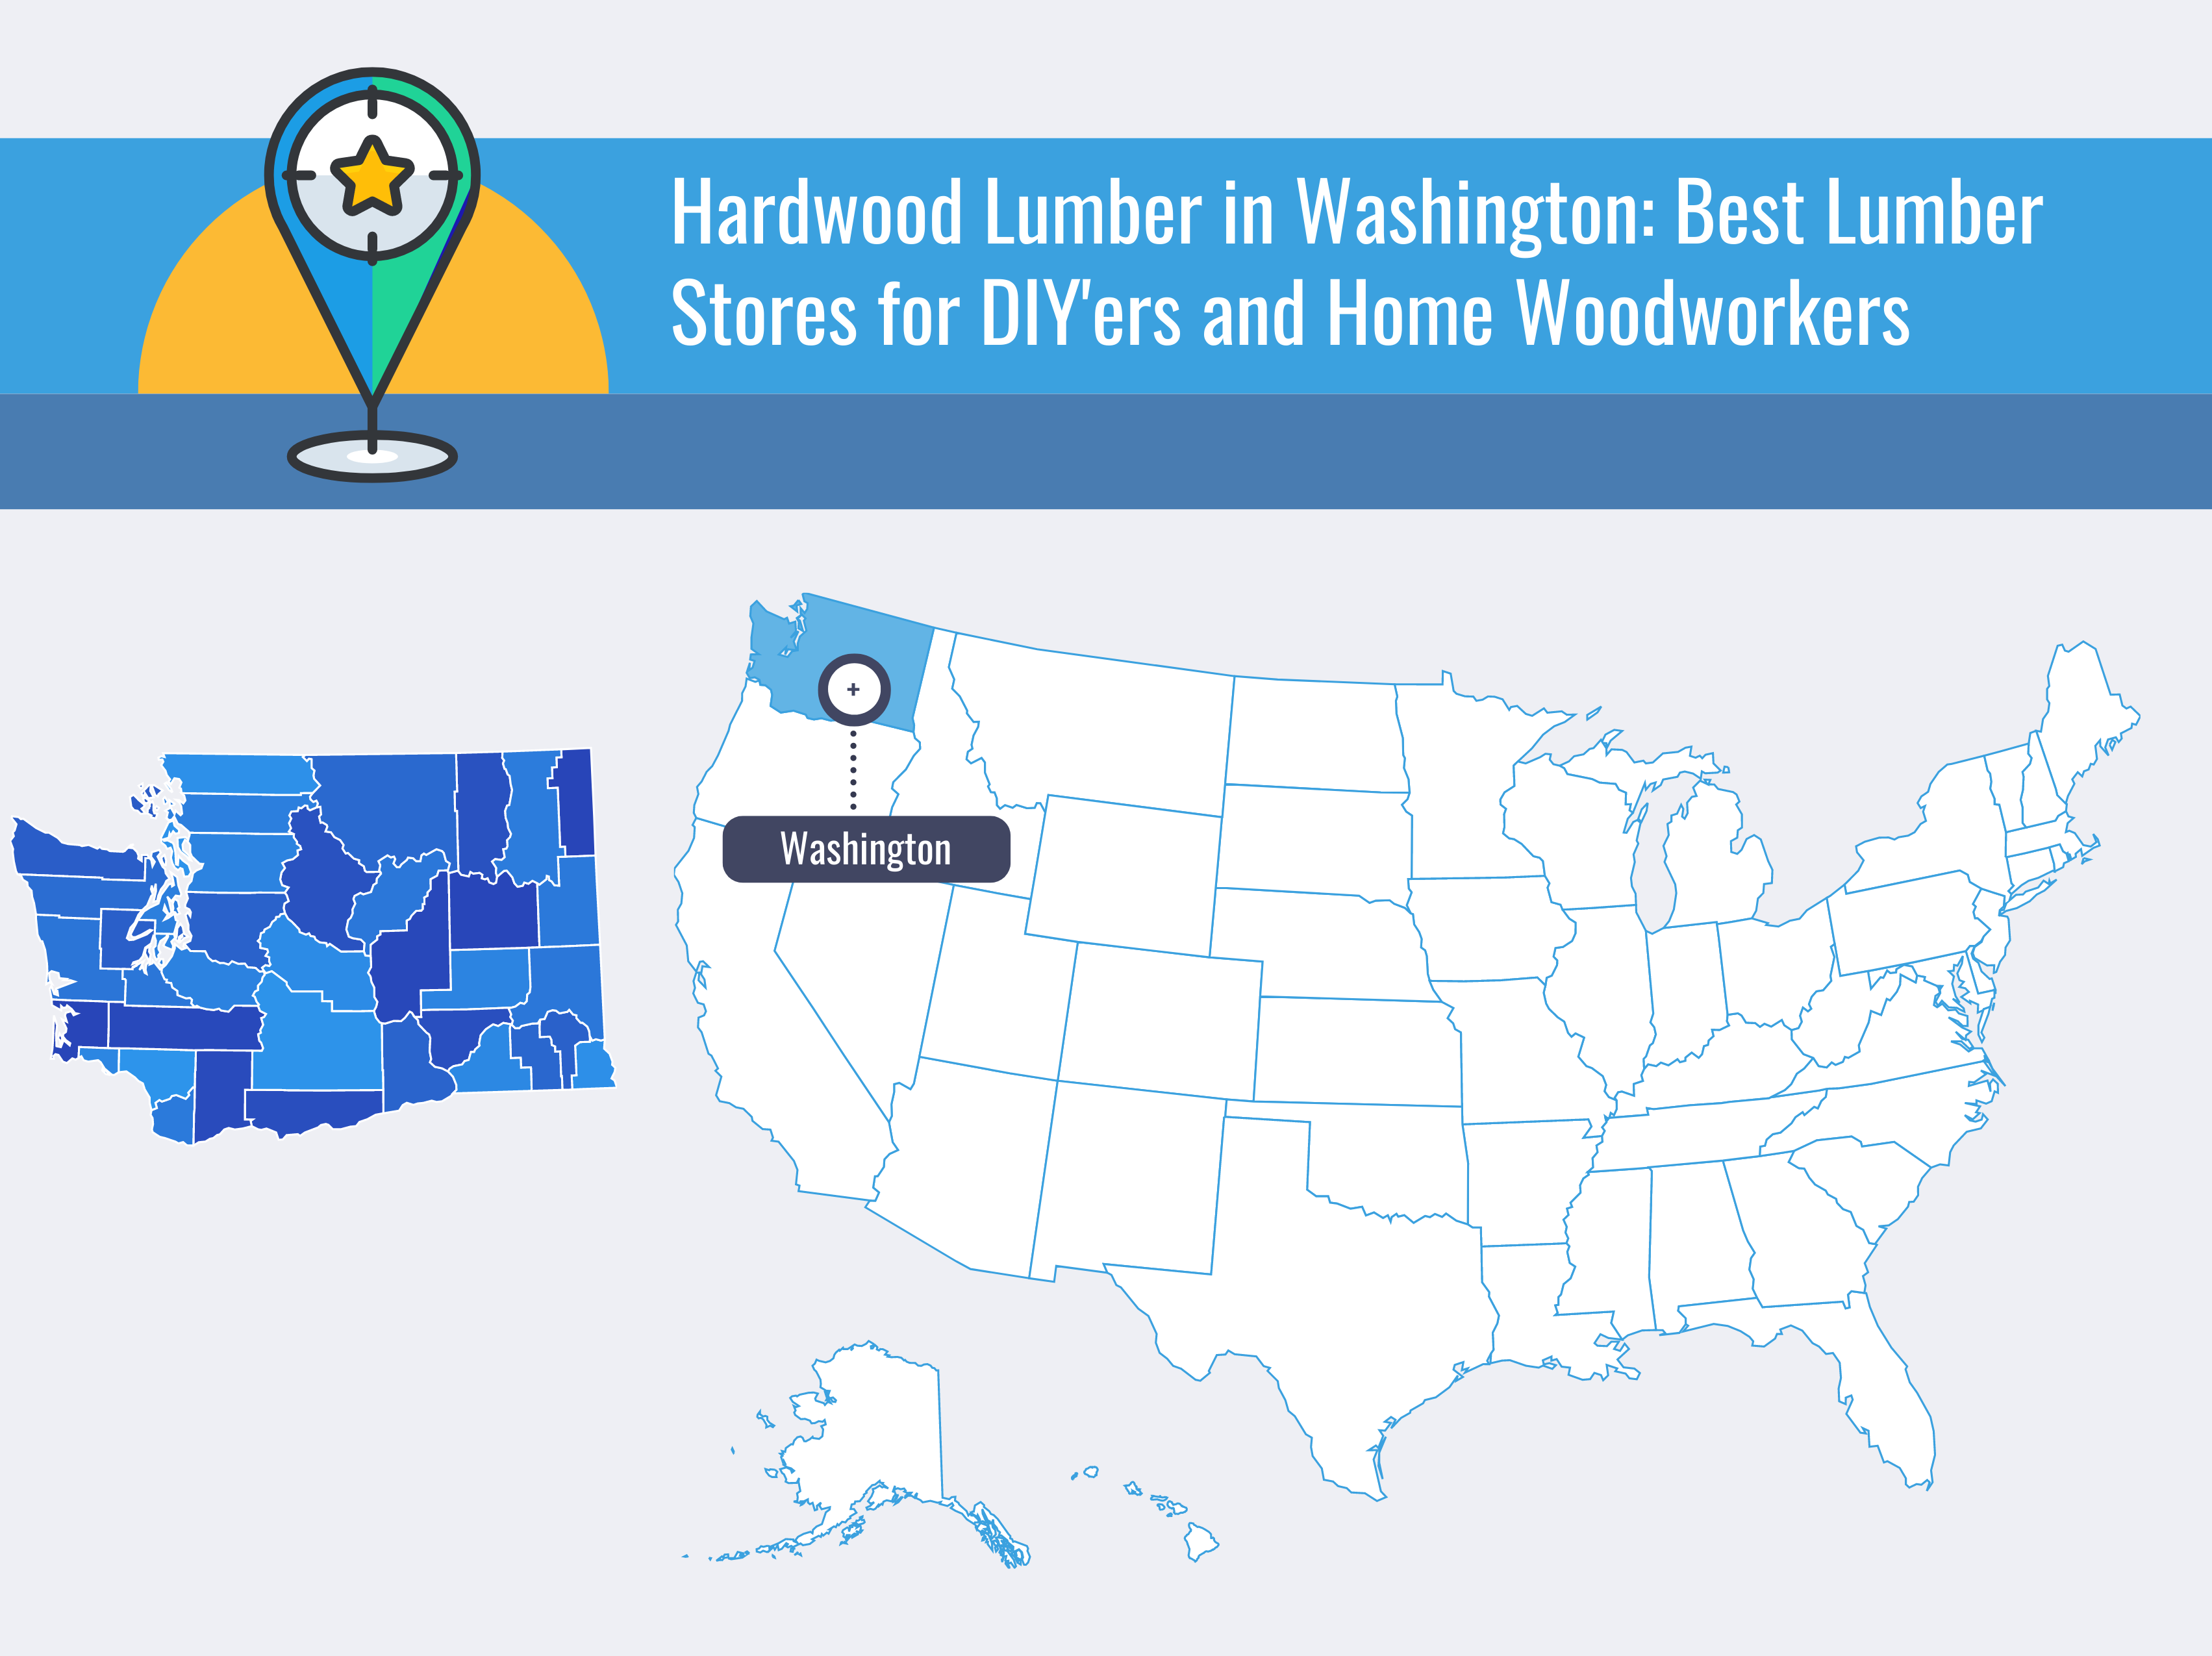 Hardwood Lumber in Washington Best Lumber Stores